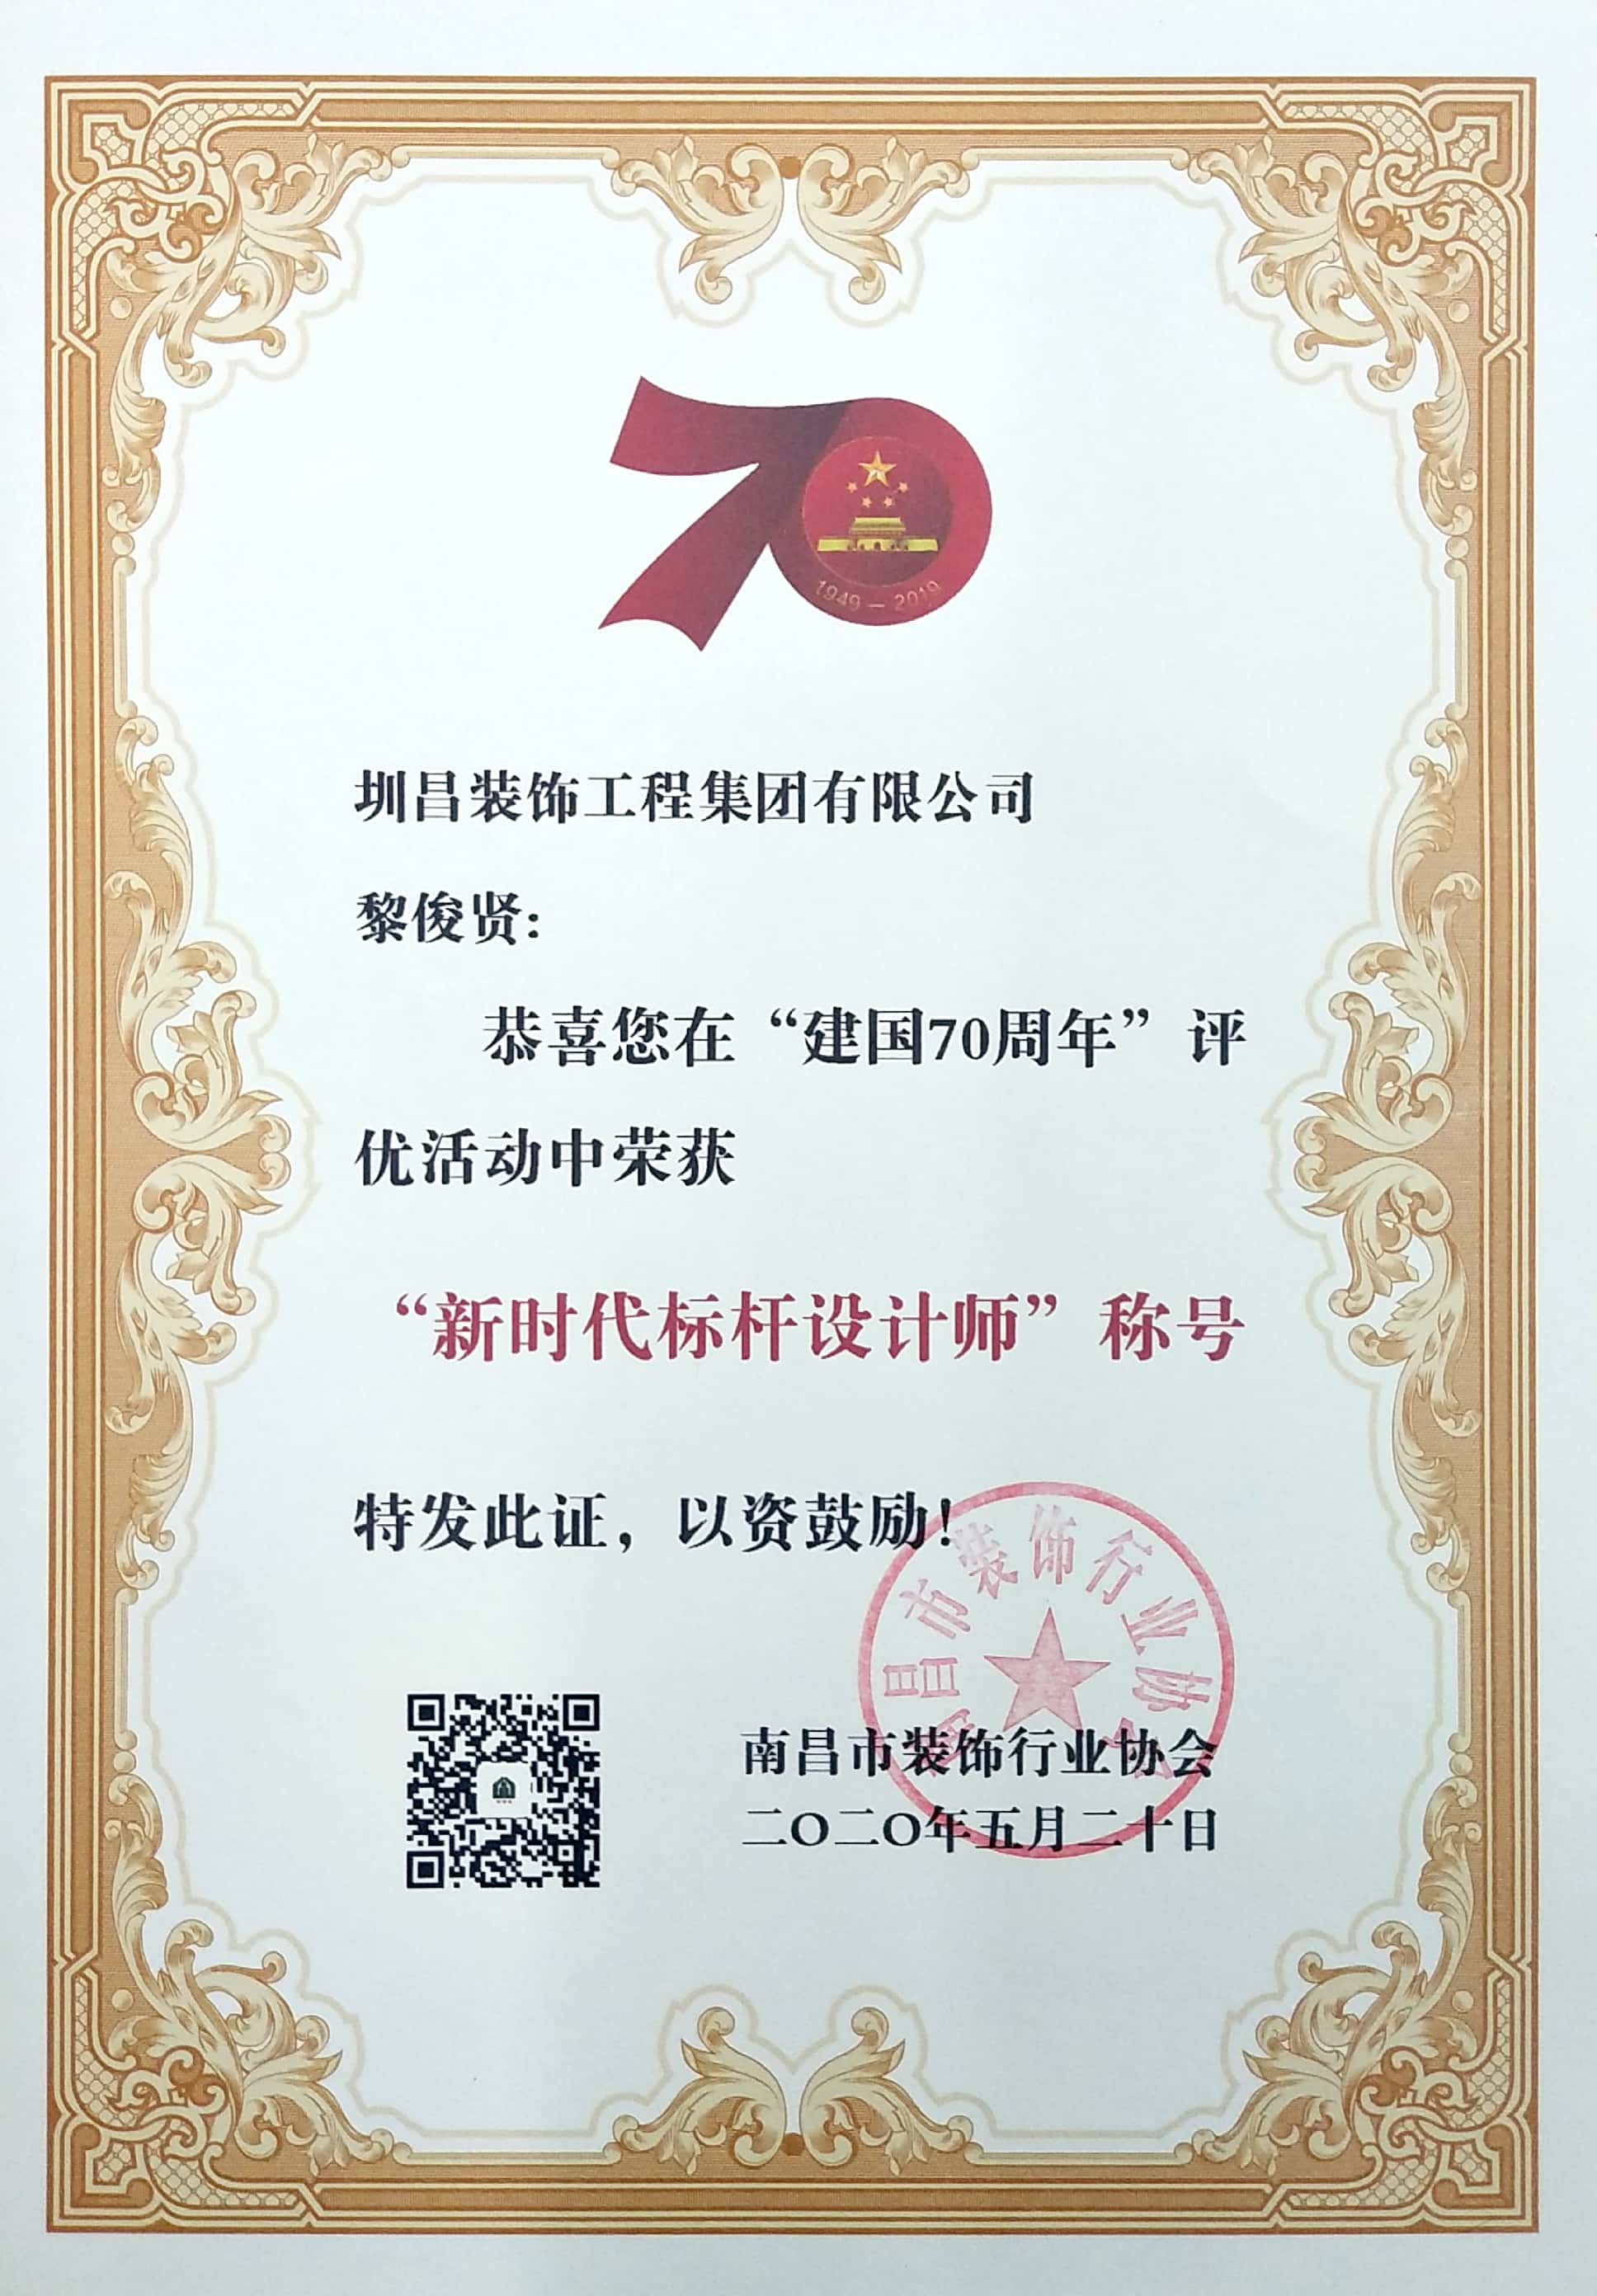 黎俊賢同志榮獲2020年新時代標桿設計師稱號